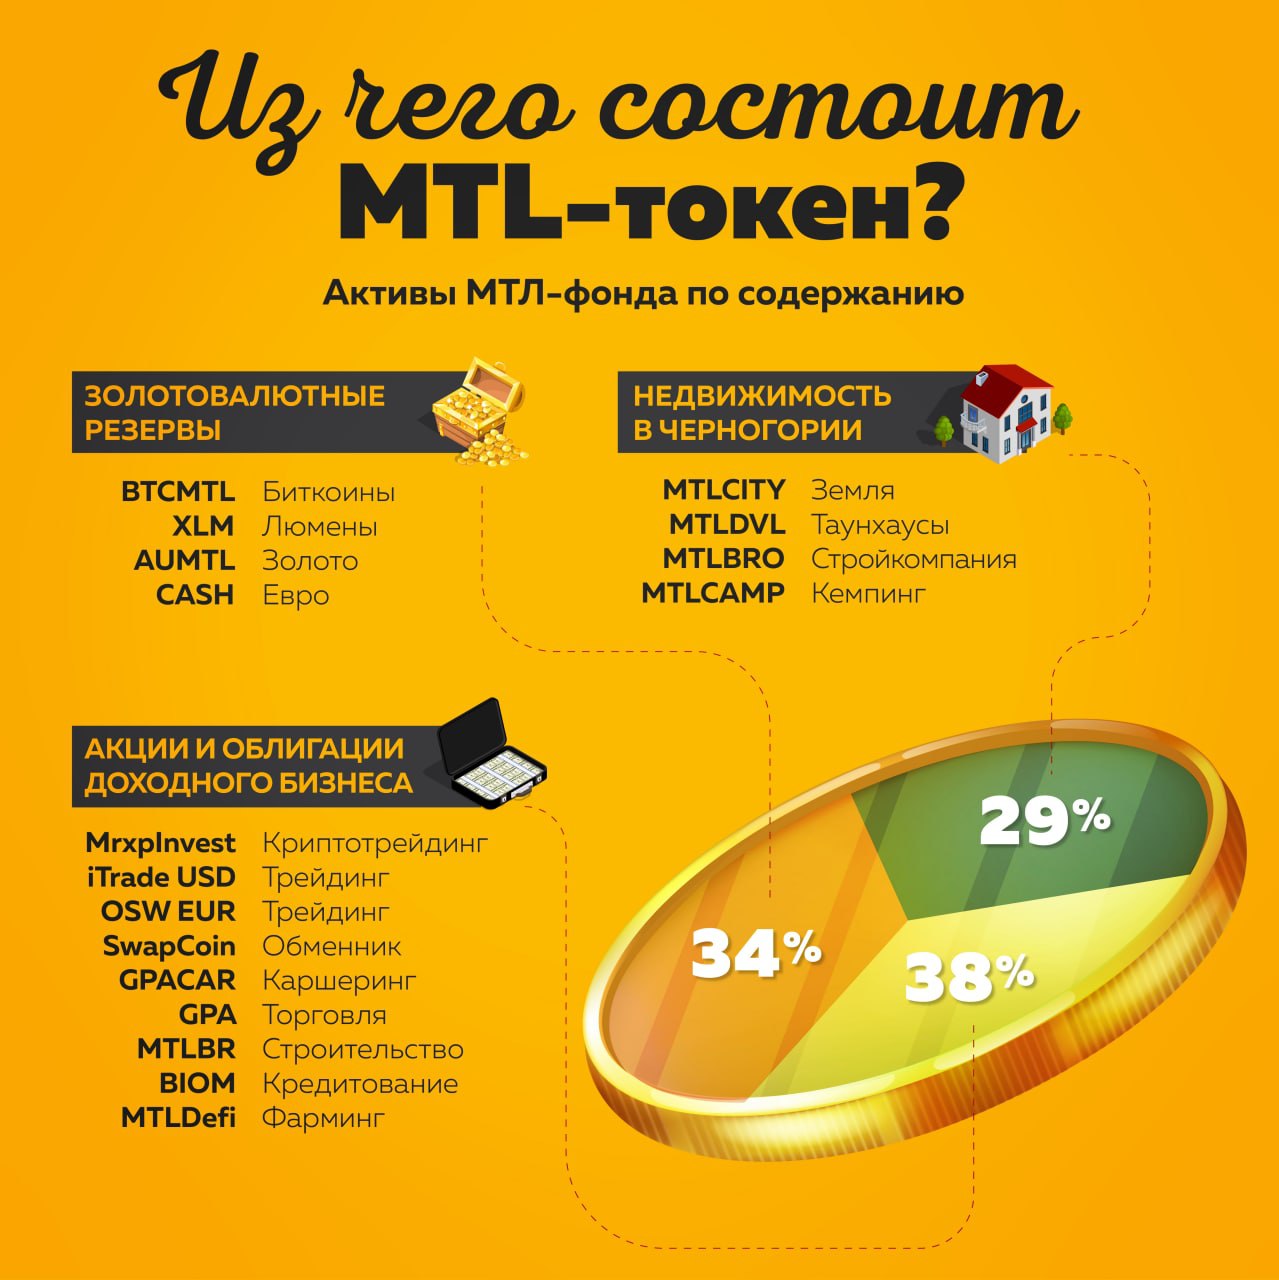 MTL_token_content